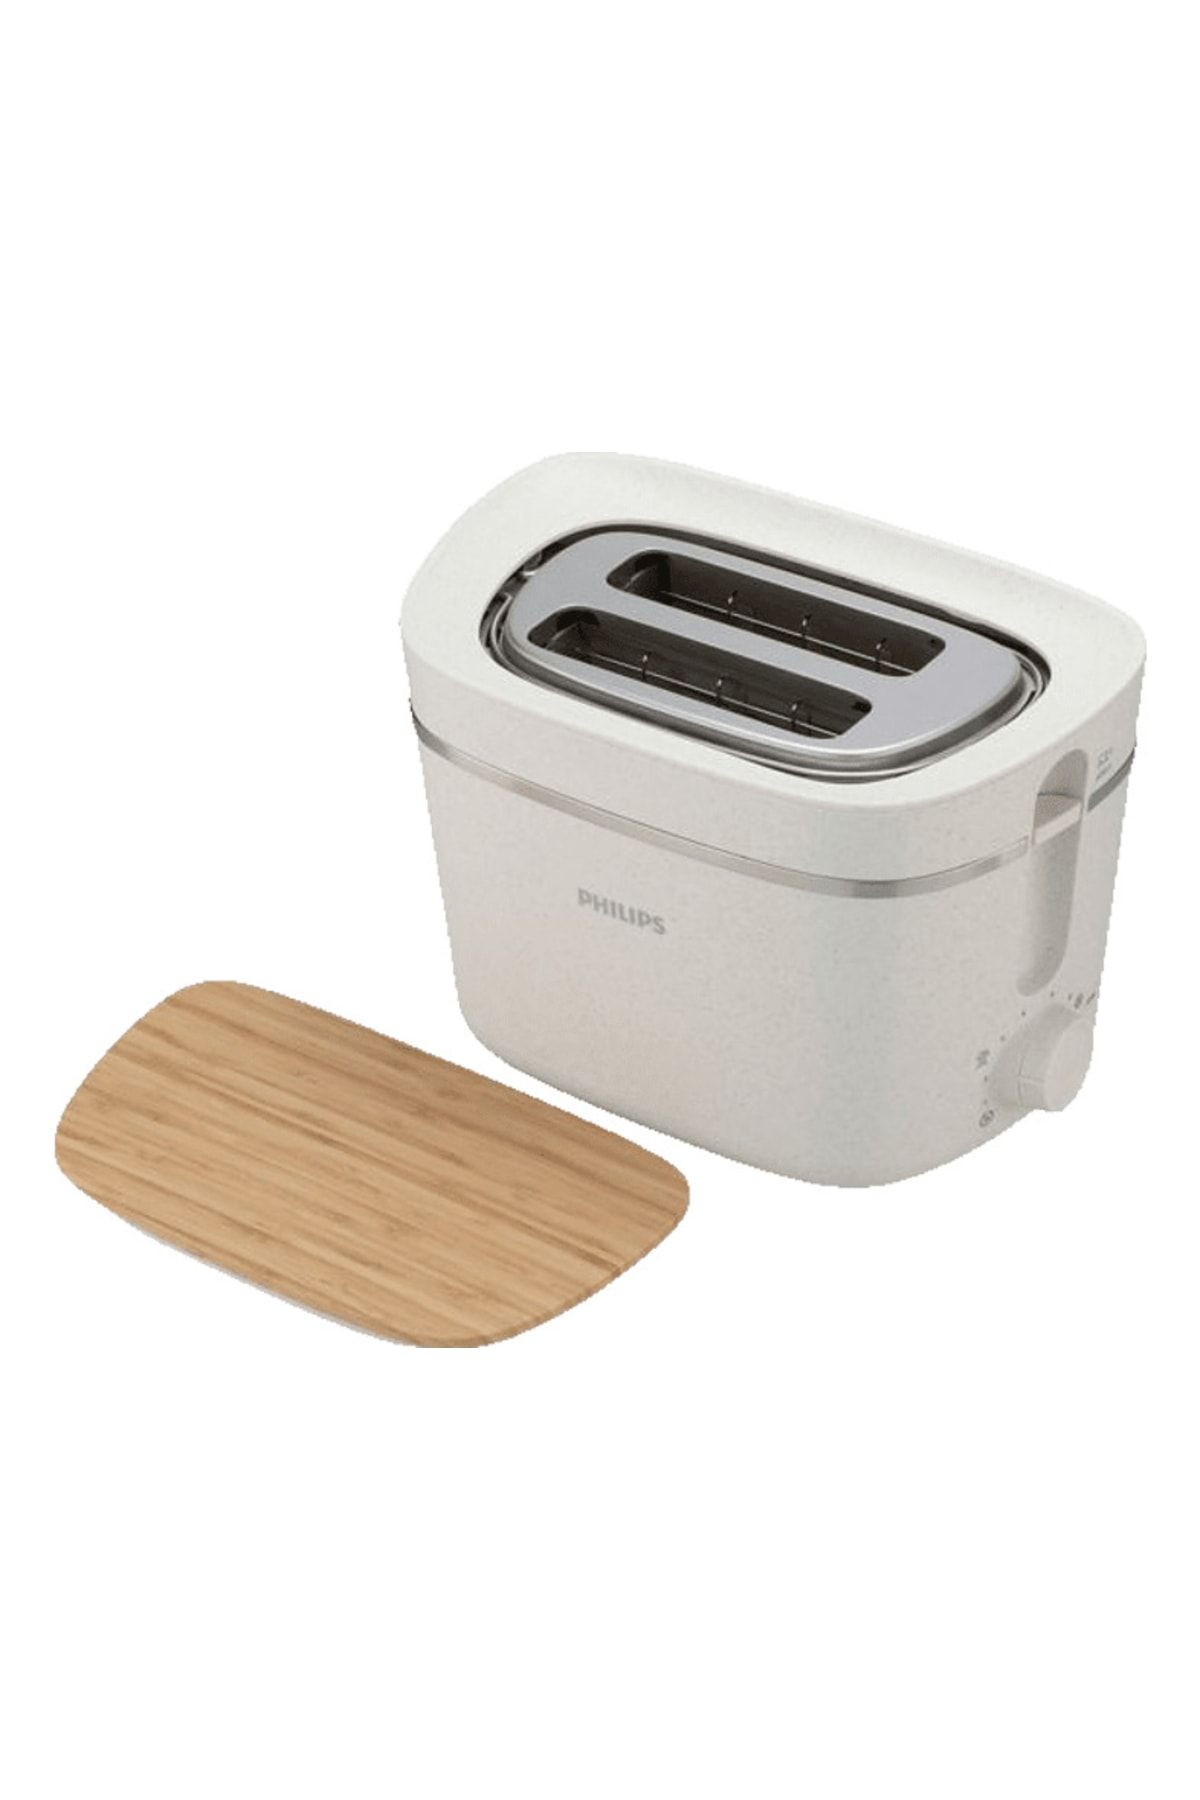 Philips Hd2640/10 Çevre Dostu Mutfak Serisi Ekmek Kızartma Makinesi Ipek Beyaz